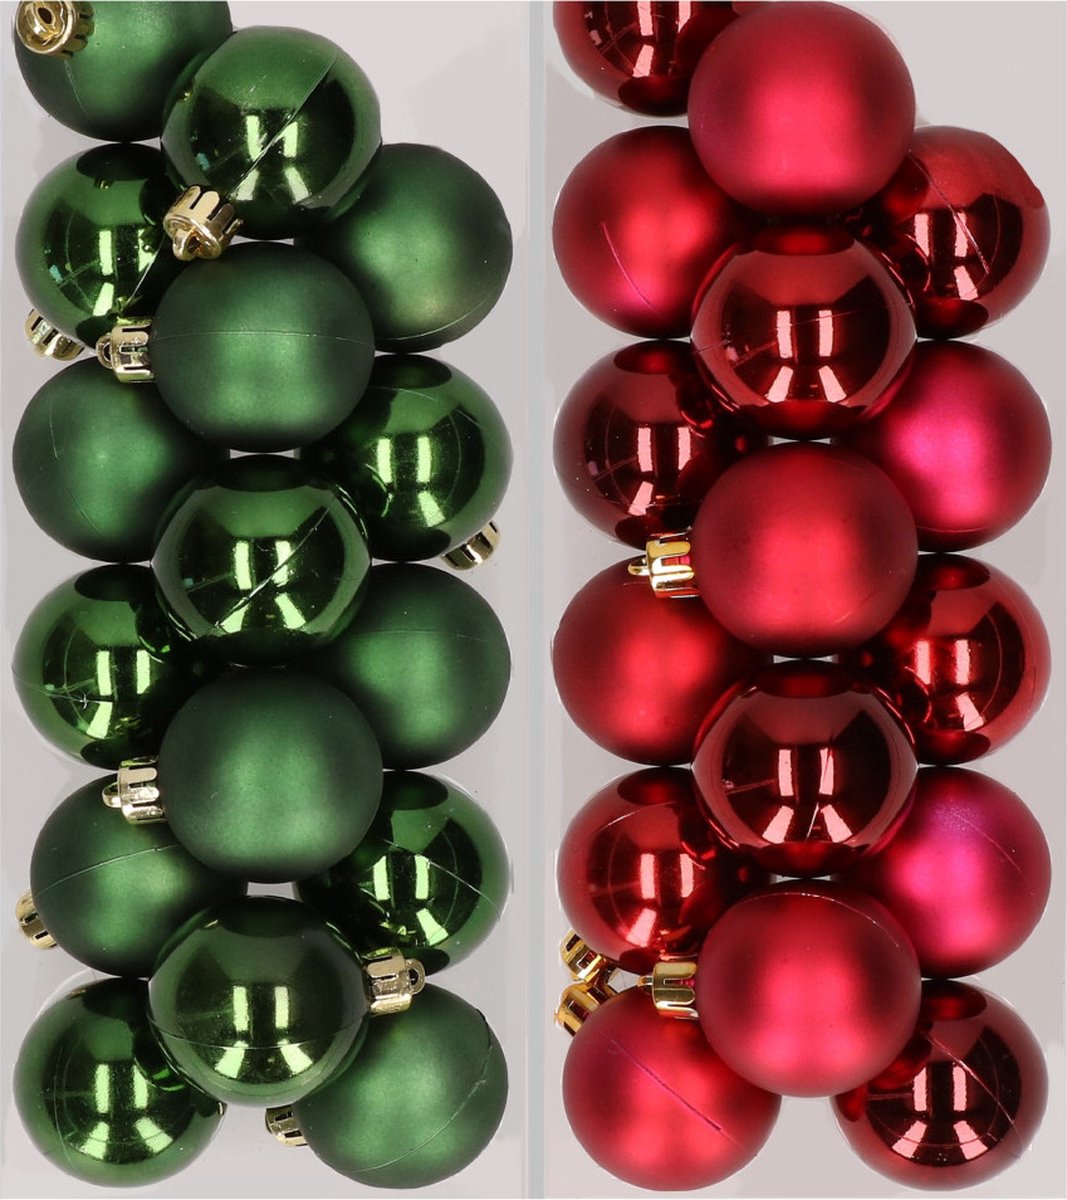 32x stuks kunststof kerstballen mix van donkergroen en donkerrood 4 cm - Kerstversiering